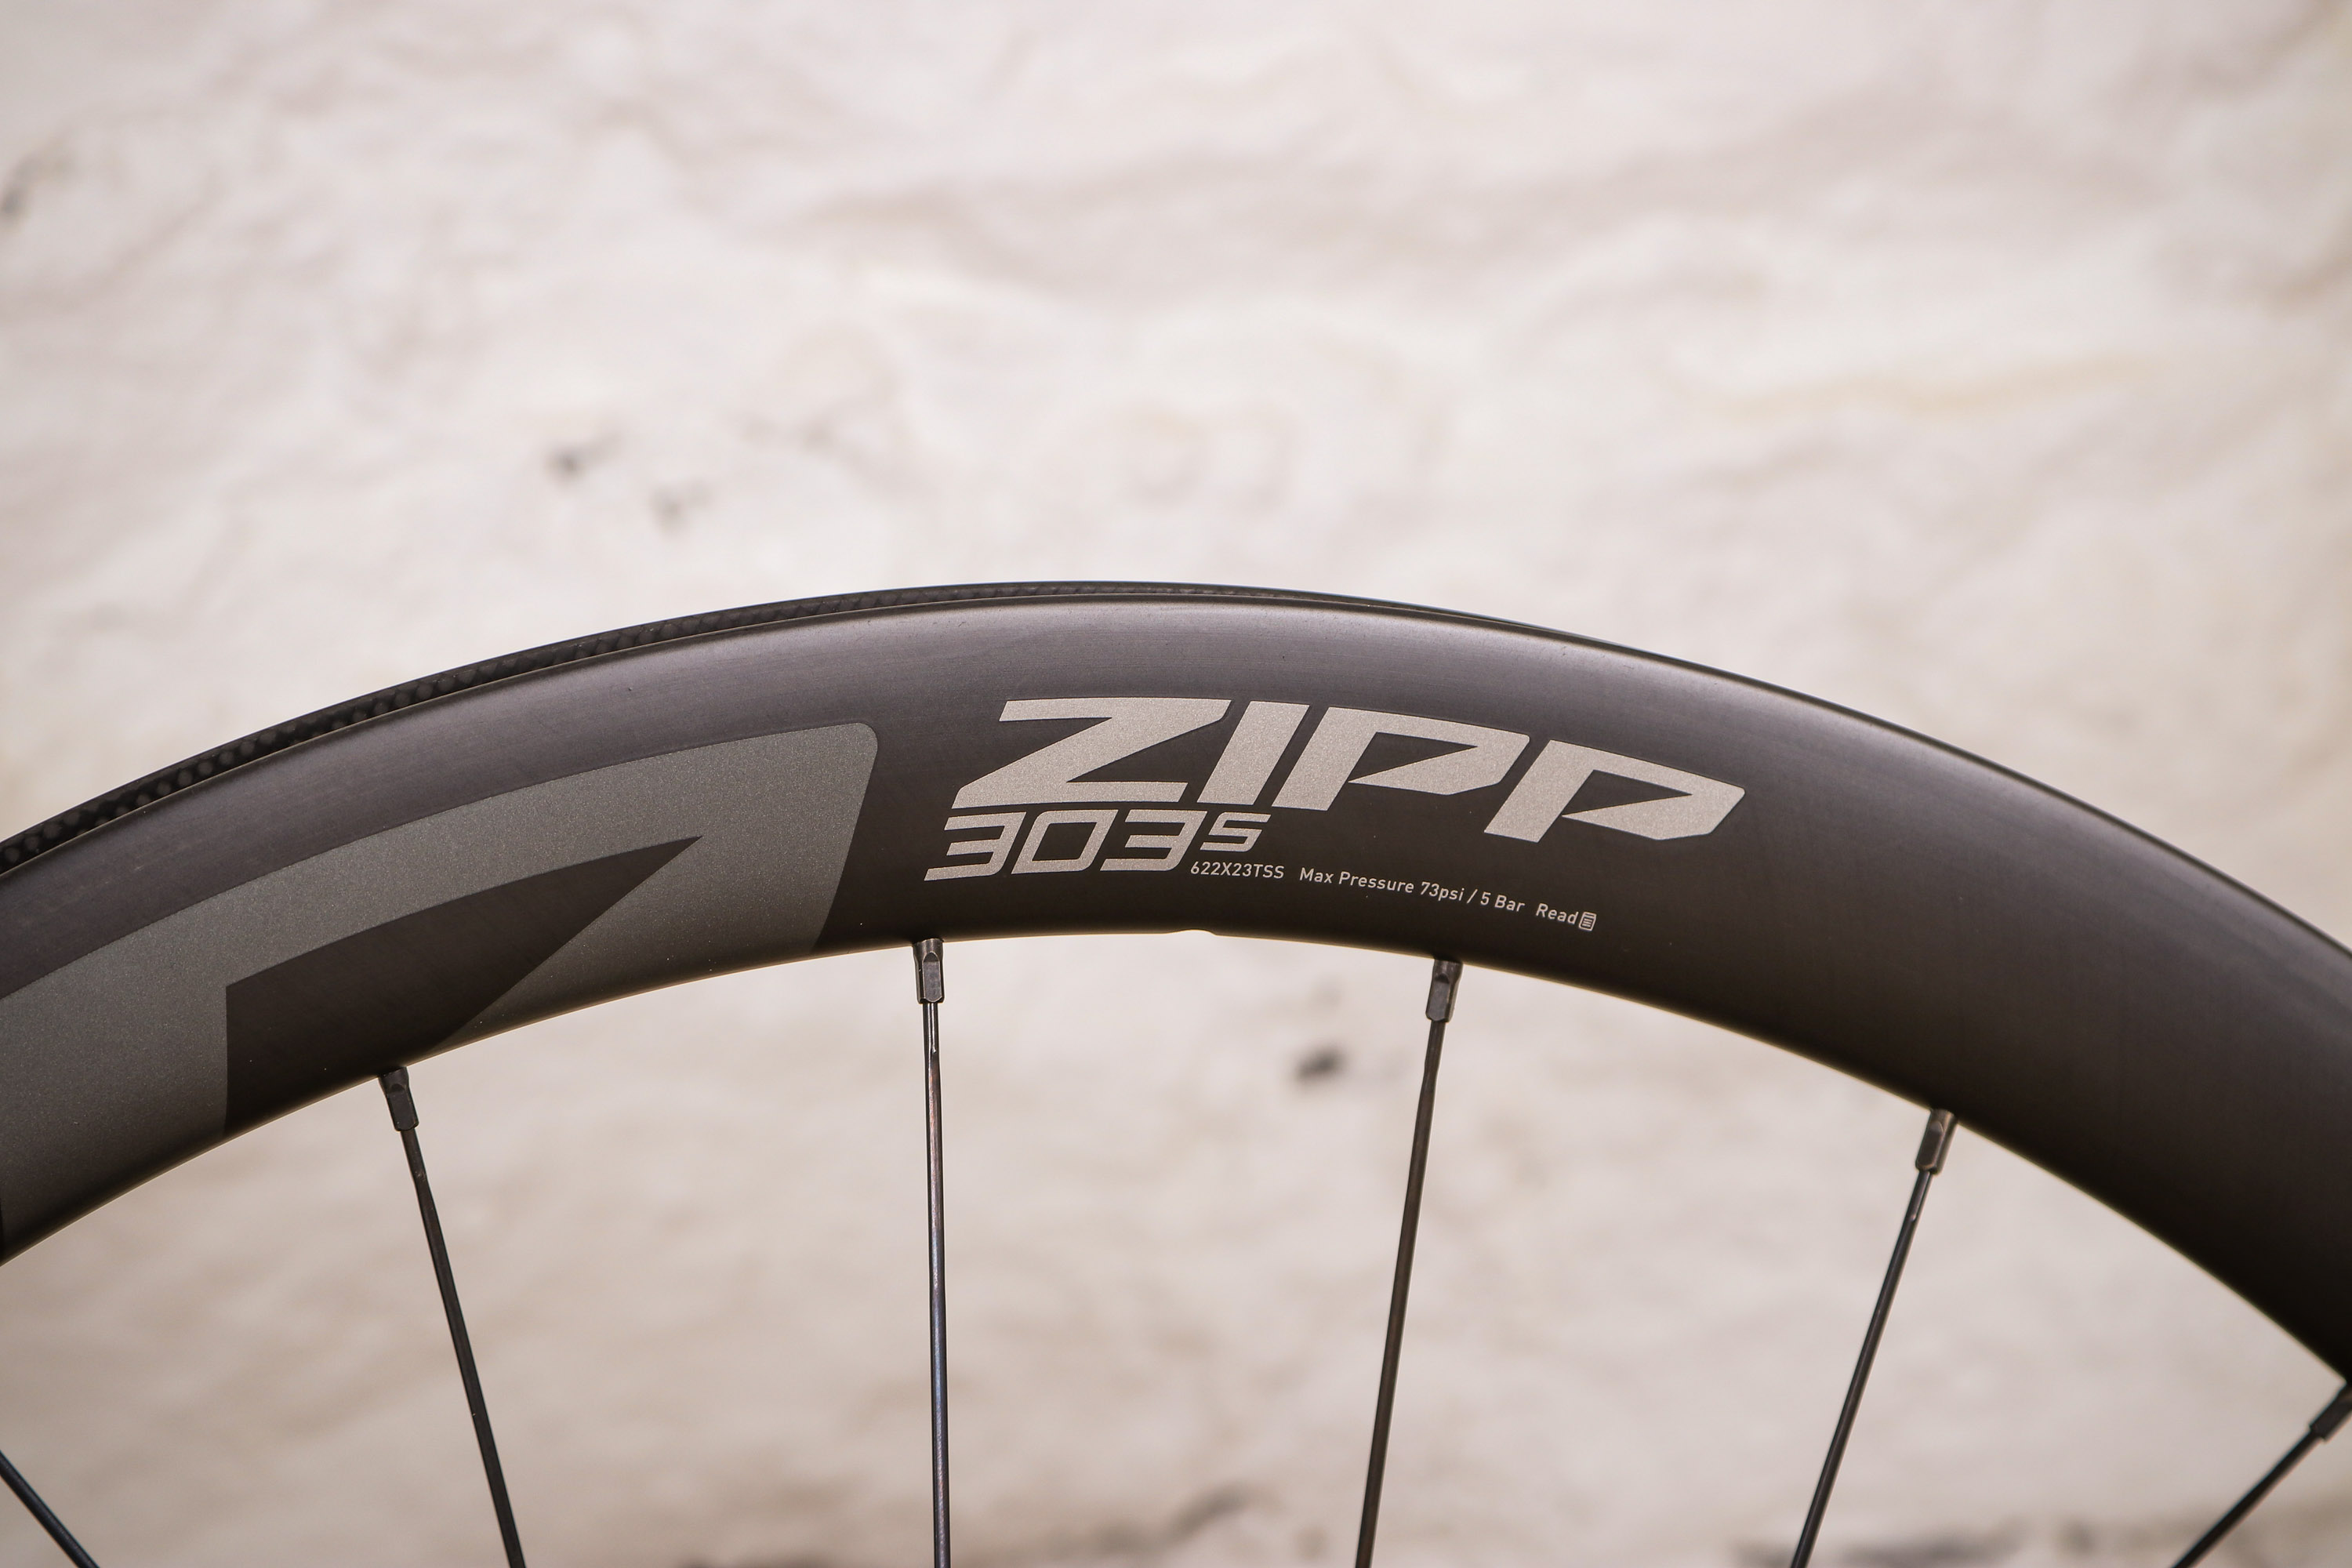 zipp bike wheel